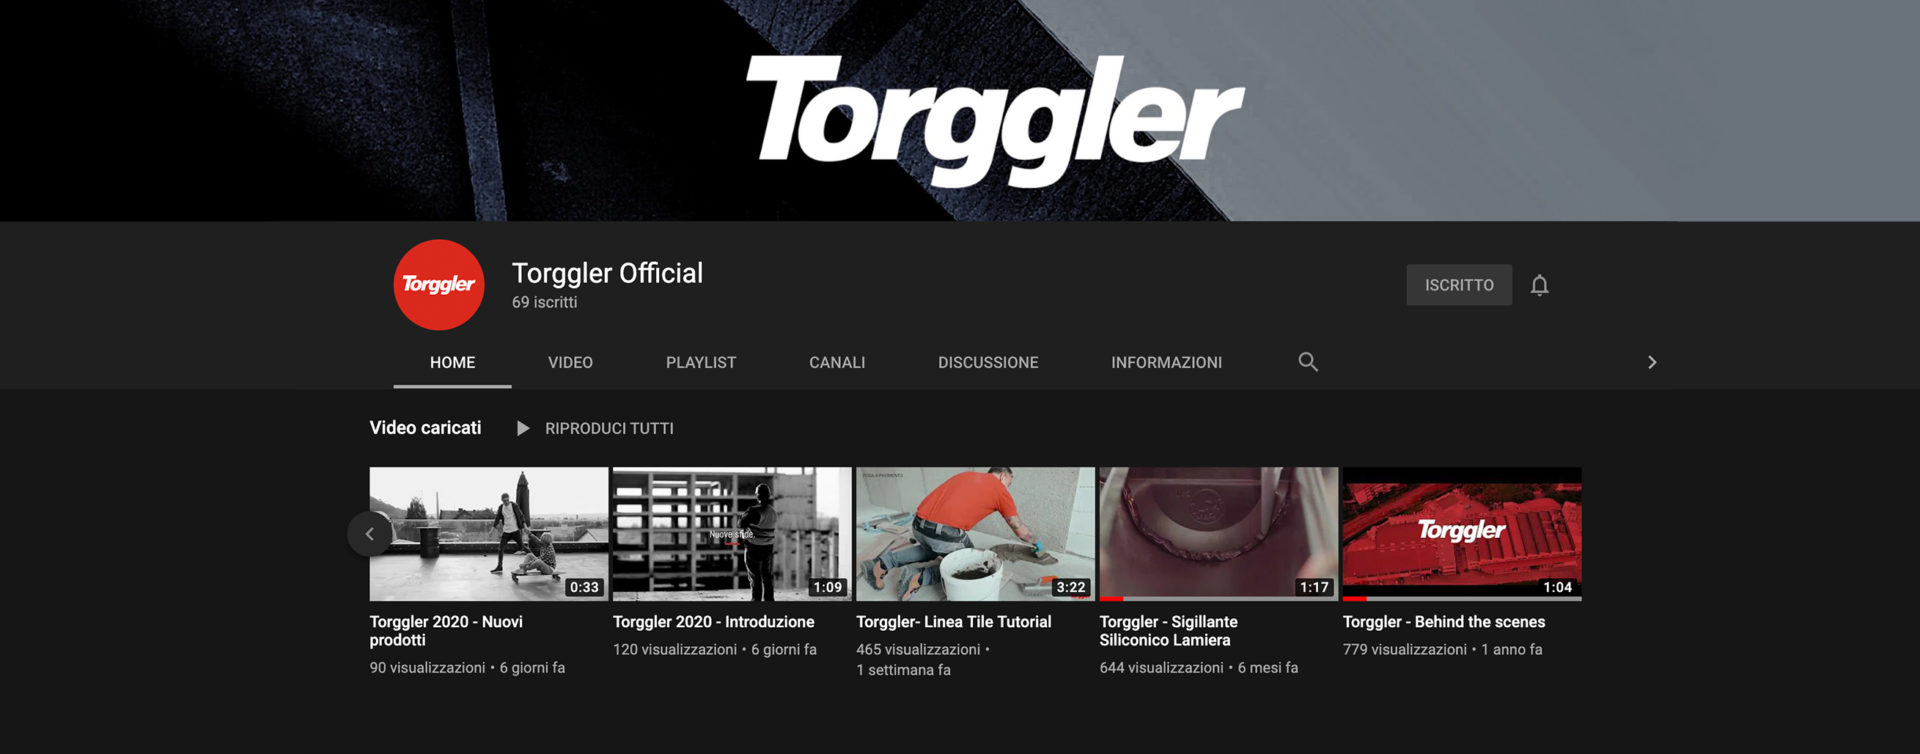 Youtube Torggler_teaser